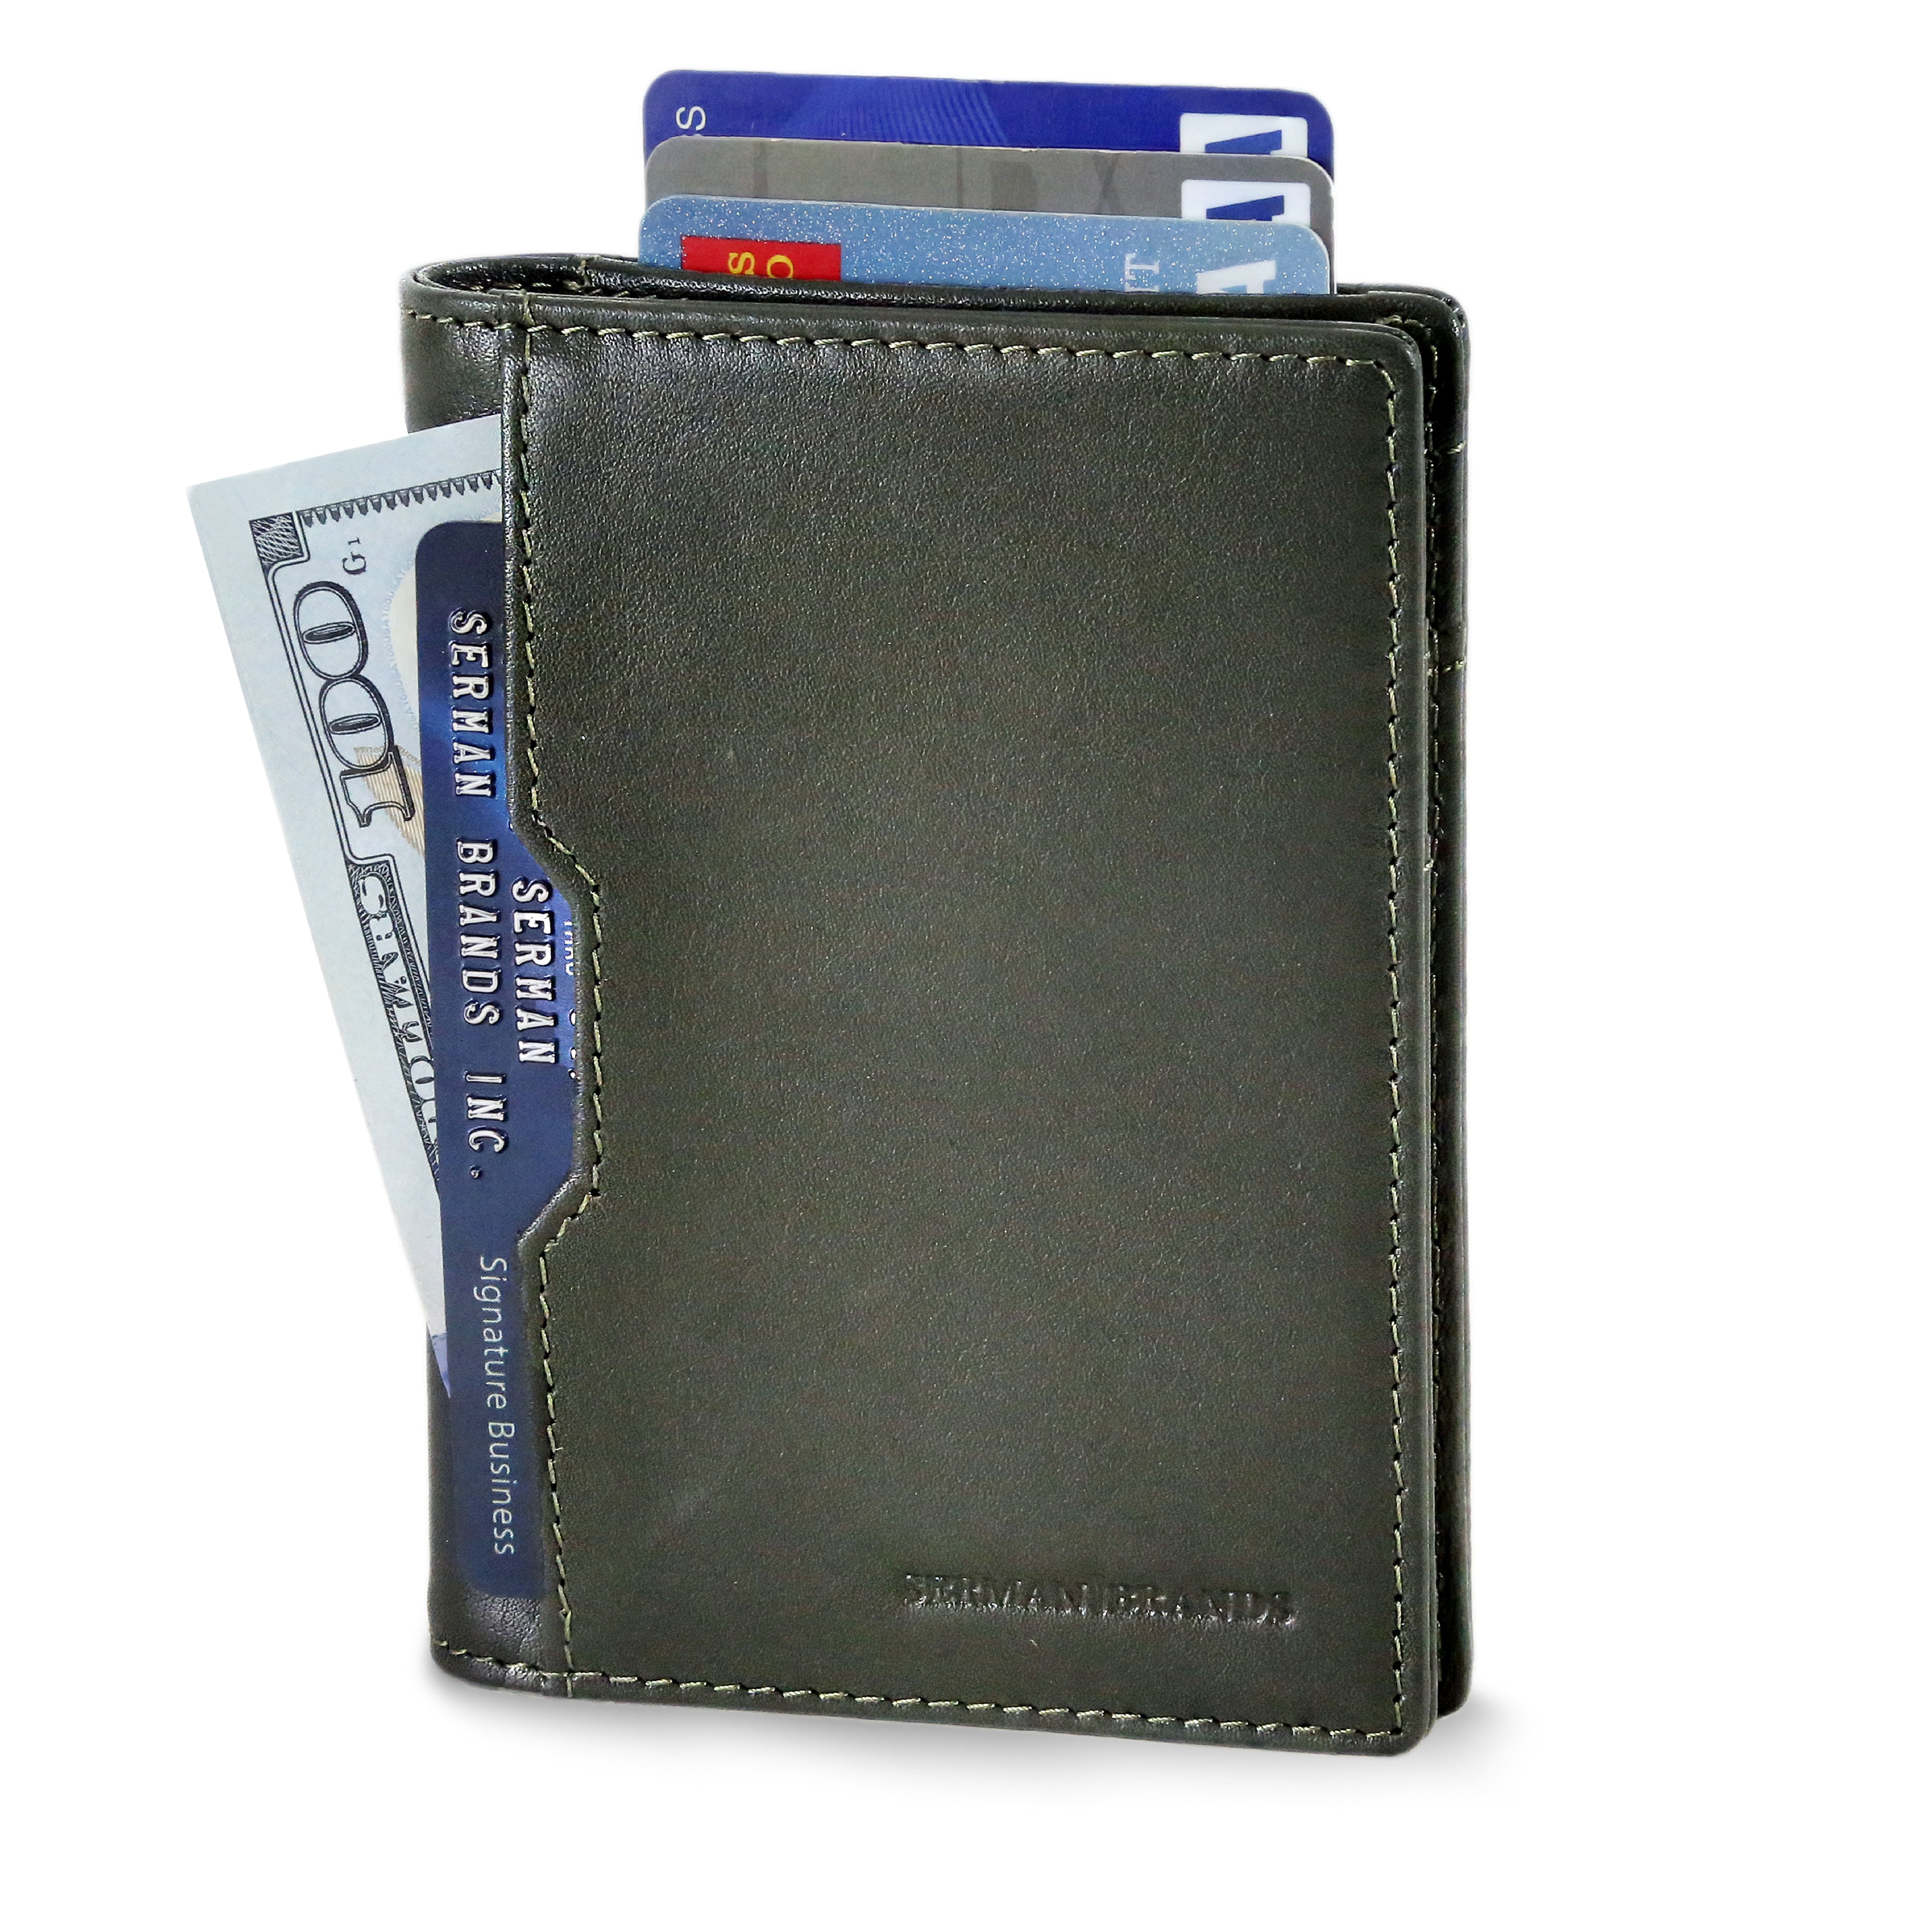 Serman Brands - SERMAN BRANDS - RFID Slim Wallets for Men. Mens leather ...